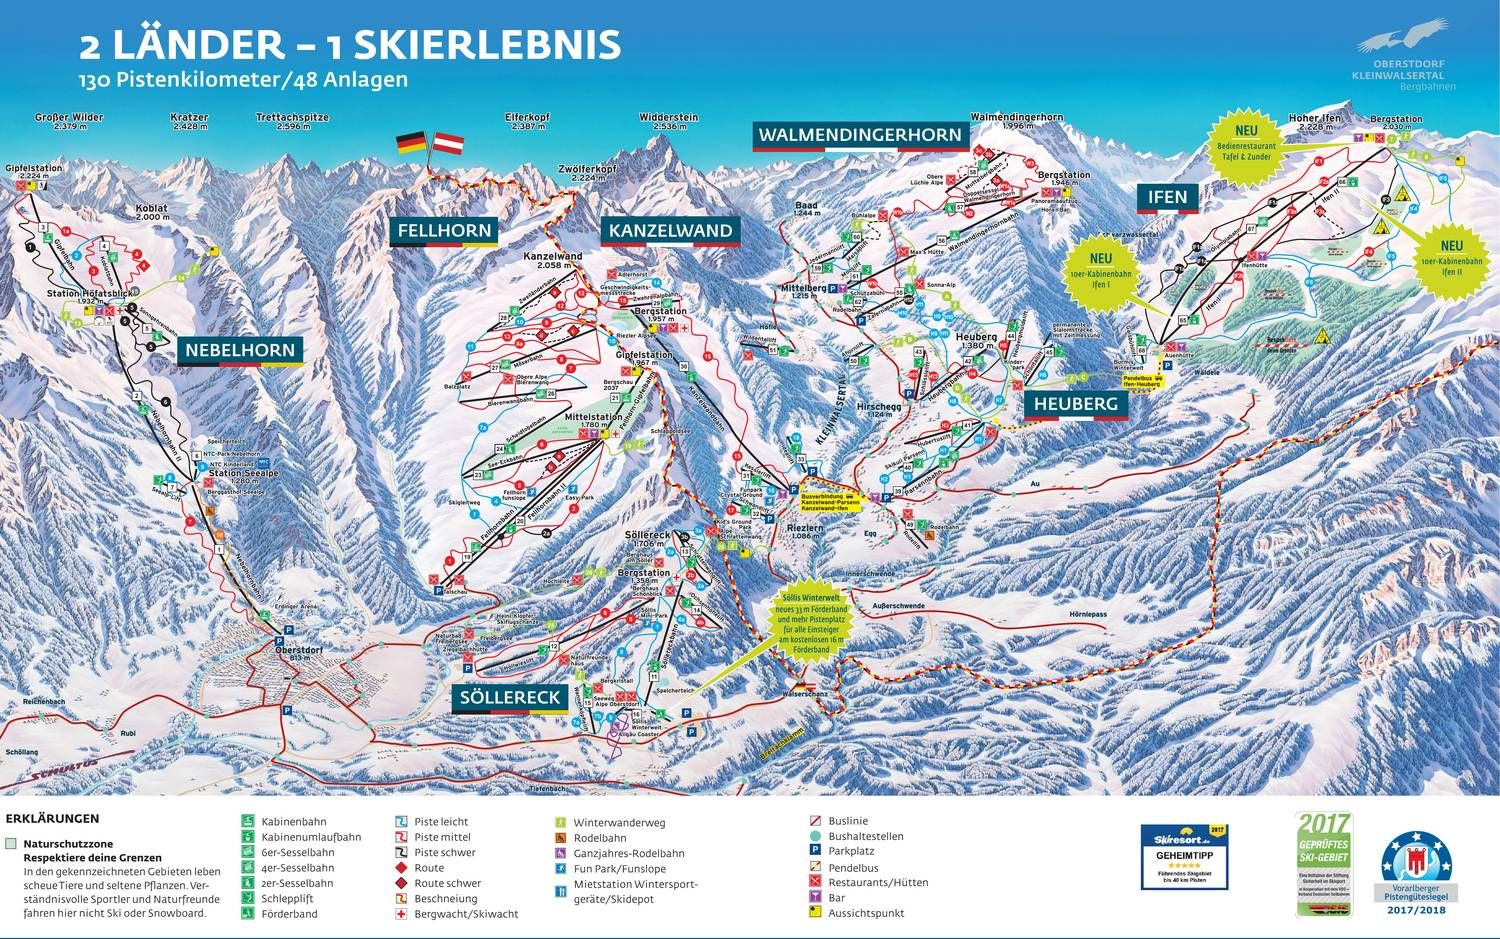 Ski Area Fellhorn-Kanzelwand 2 Countries Border Ski Area, Bavaria